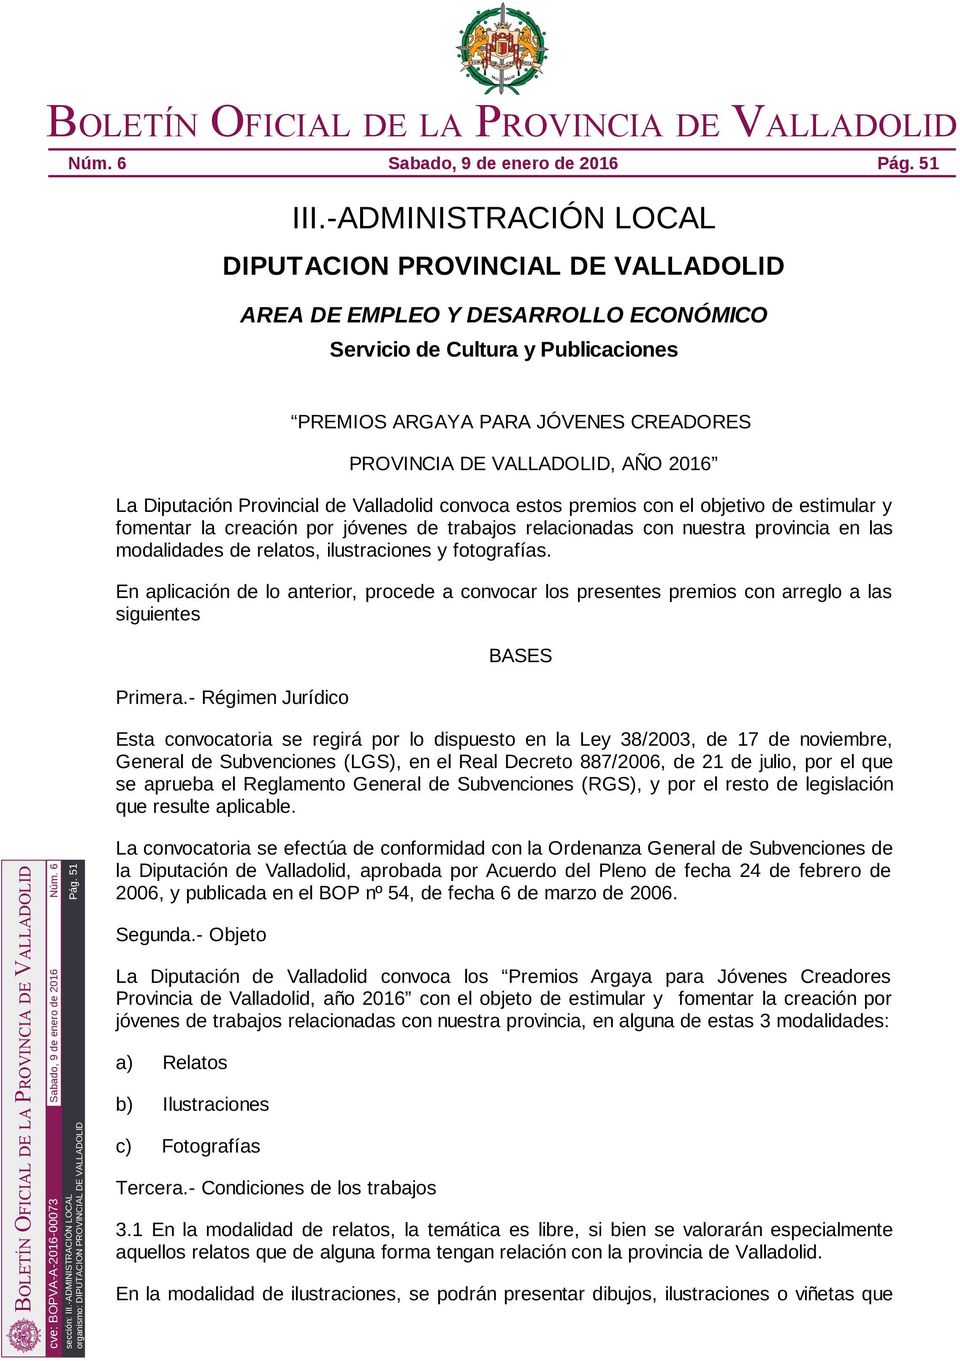 2016 La Diputación Provincial de Valladolid convoca estos premios con el objetivo de estimular y fomentar la creación por jóvenes de trabajos relacionadas con nuestra provincia en las modalidades de